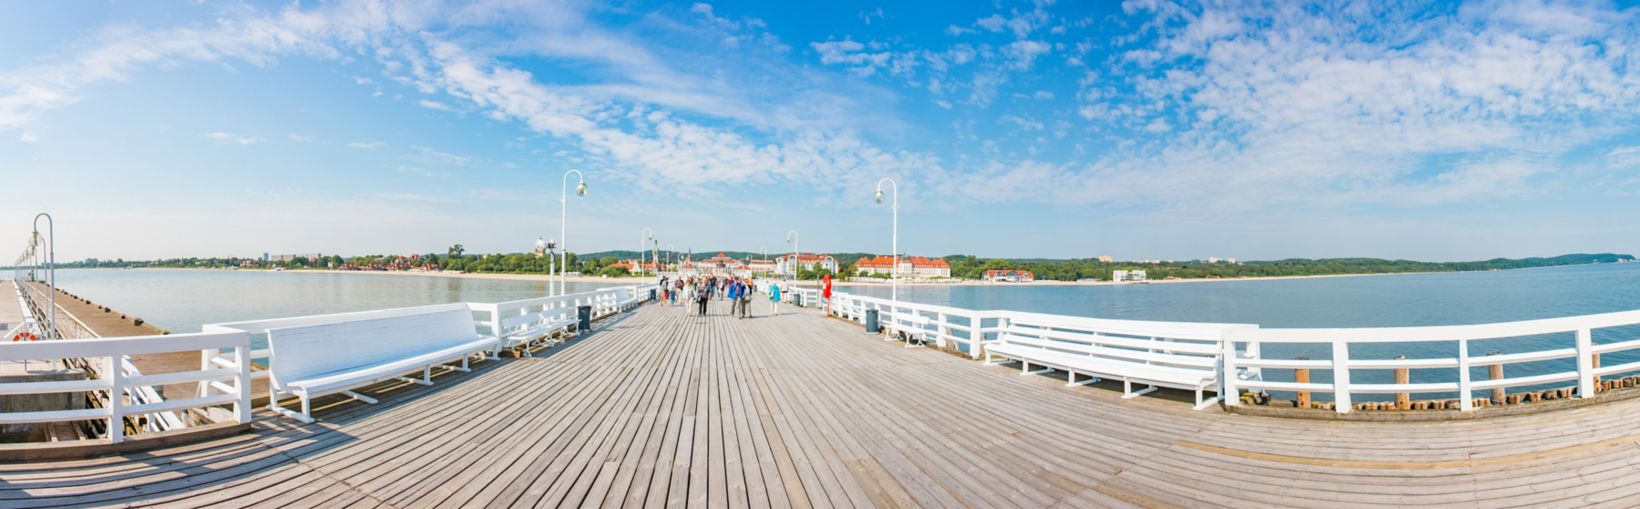 Vaade inimestele, kes kõnnivad Sopoti muulil Gdynias, Poolas päikesepaistelisel päeval